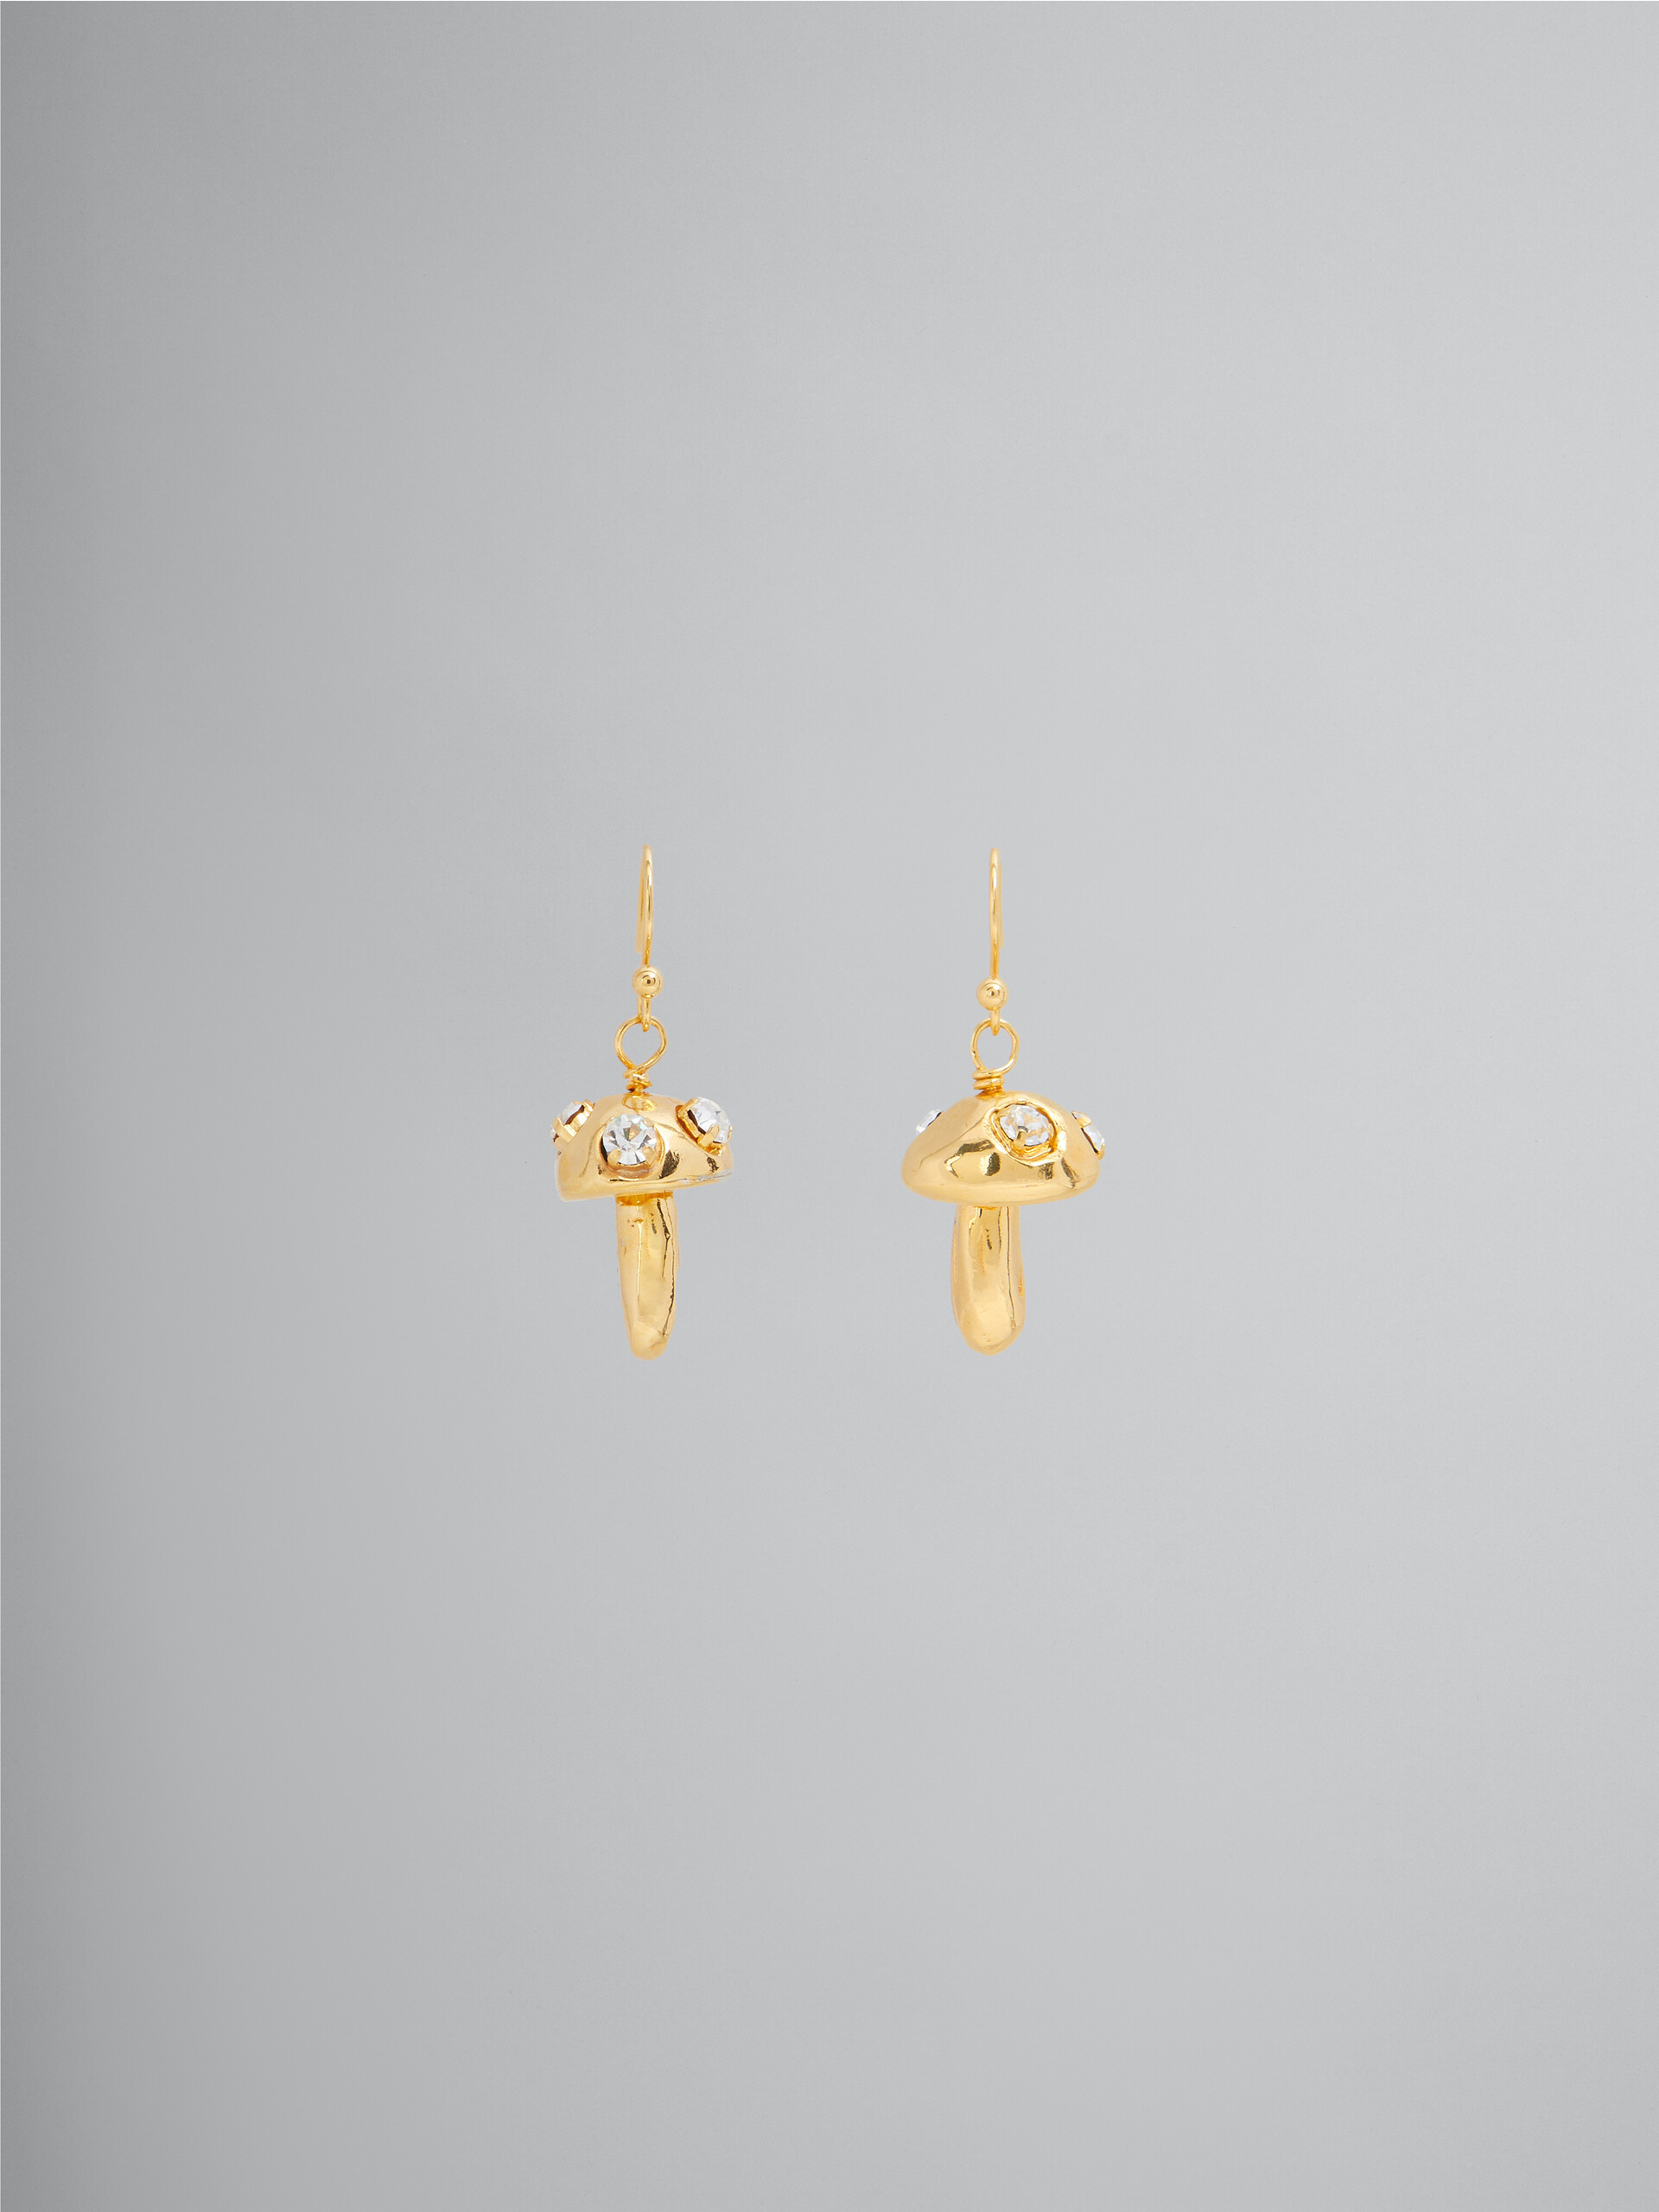 Rhinestone mushroom charm earrings - Earrings - Image 1